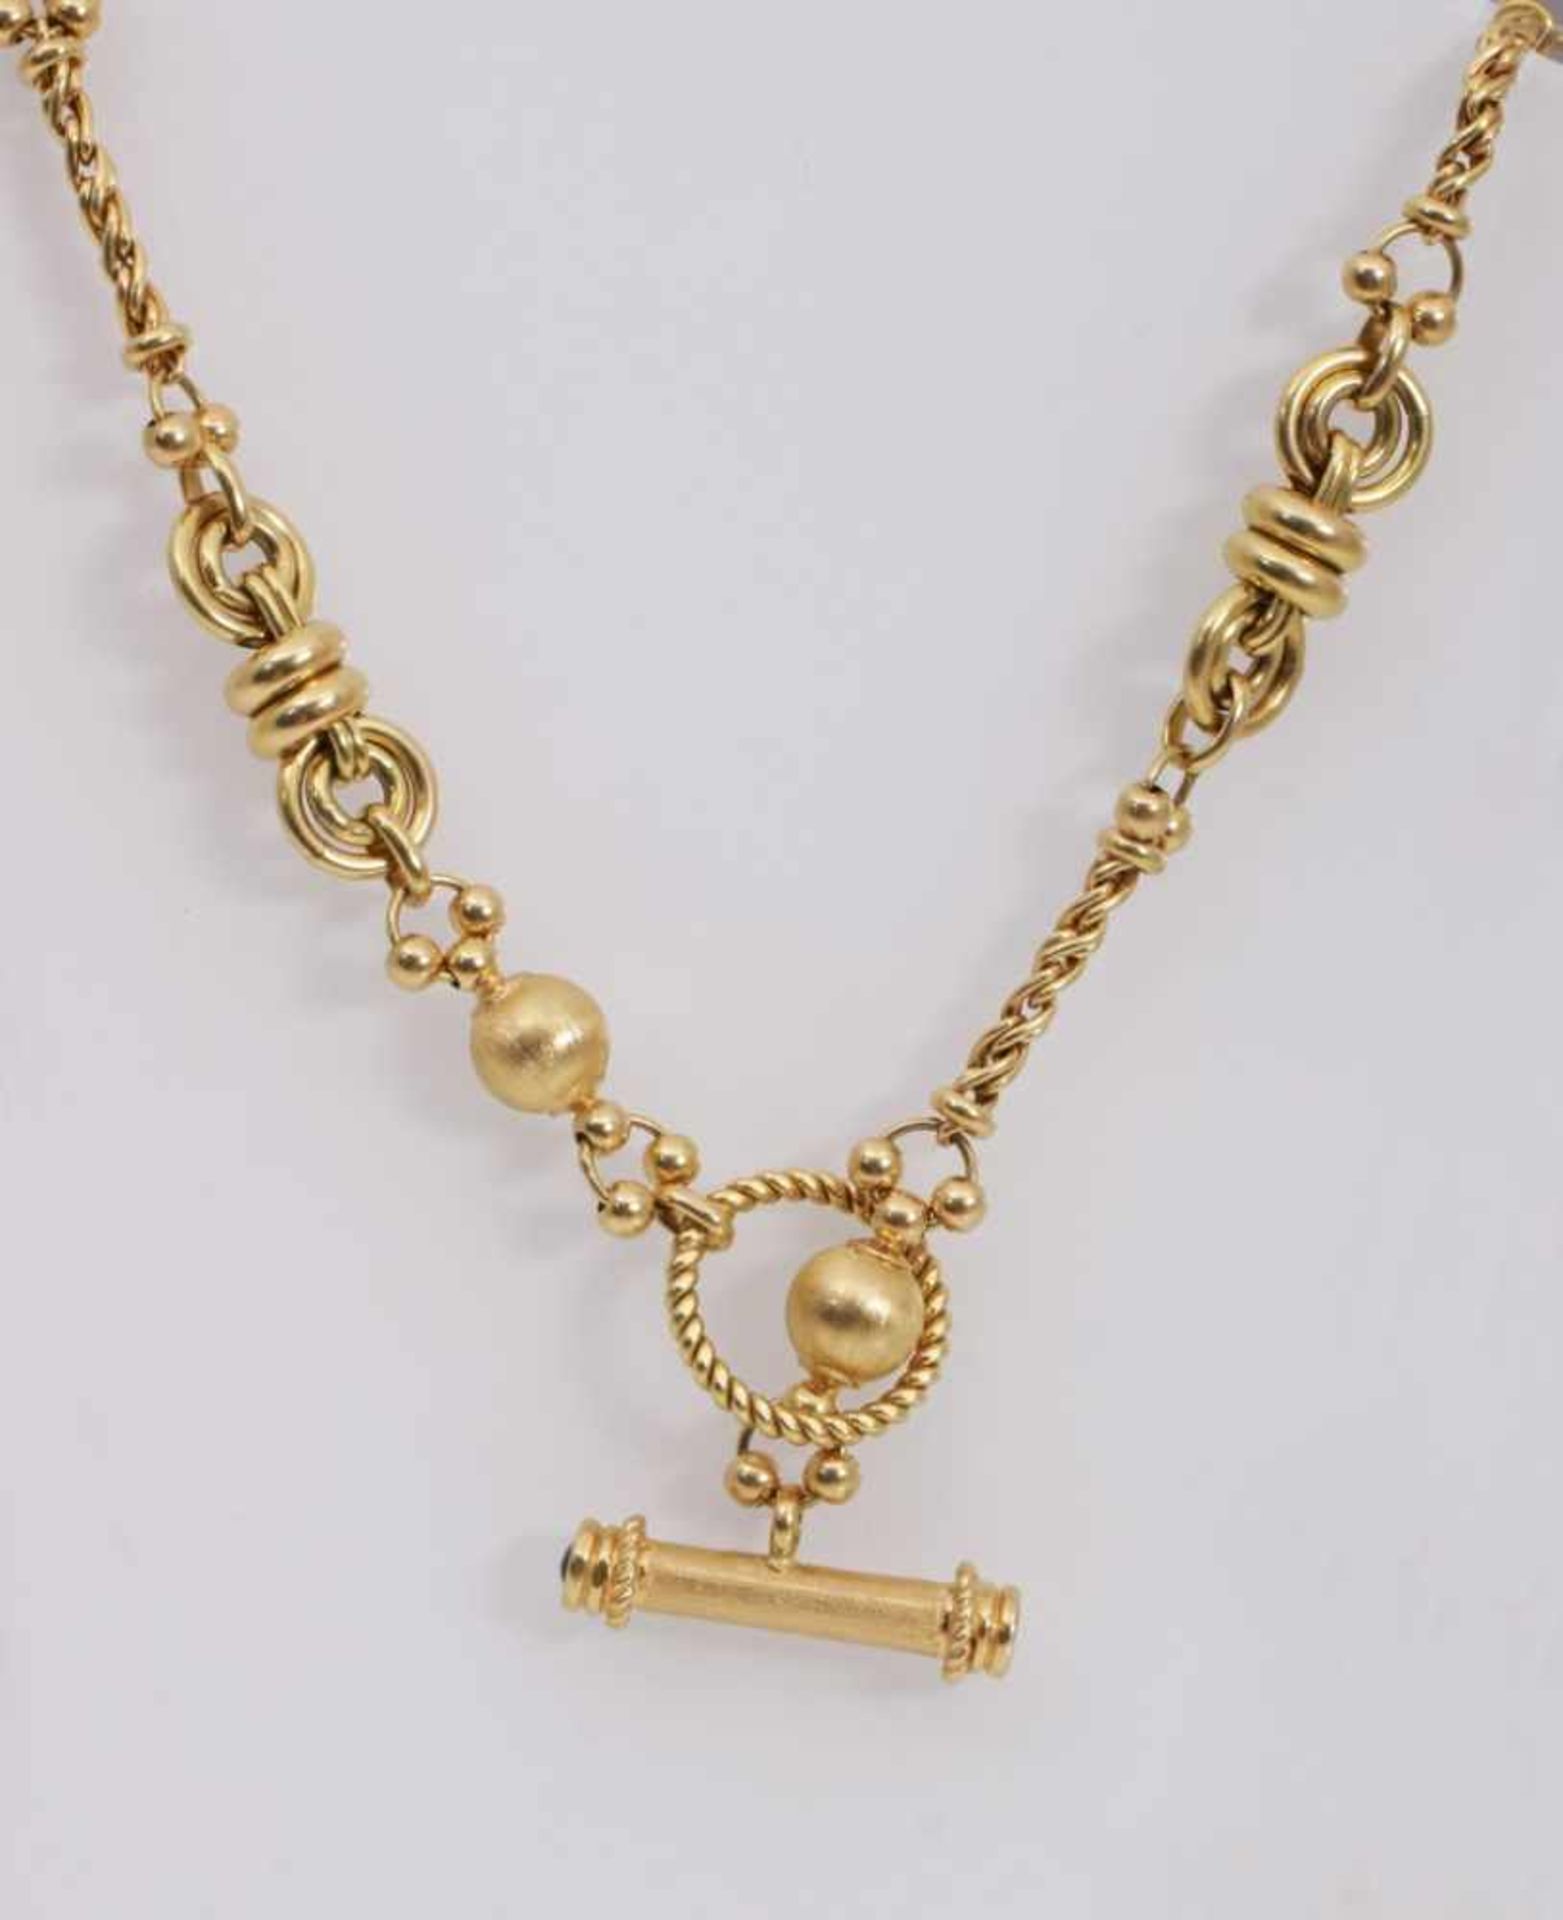 Goldene Halskette 750er Gelbgold, Gewicht 78g, L ges. 79cm - Image 2 of 3